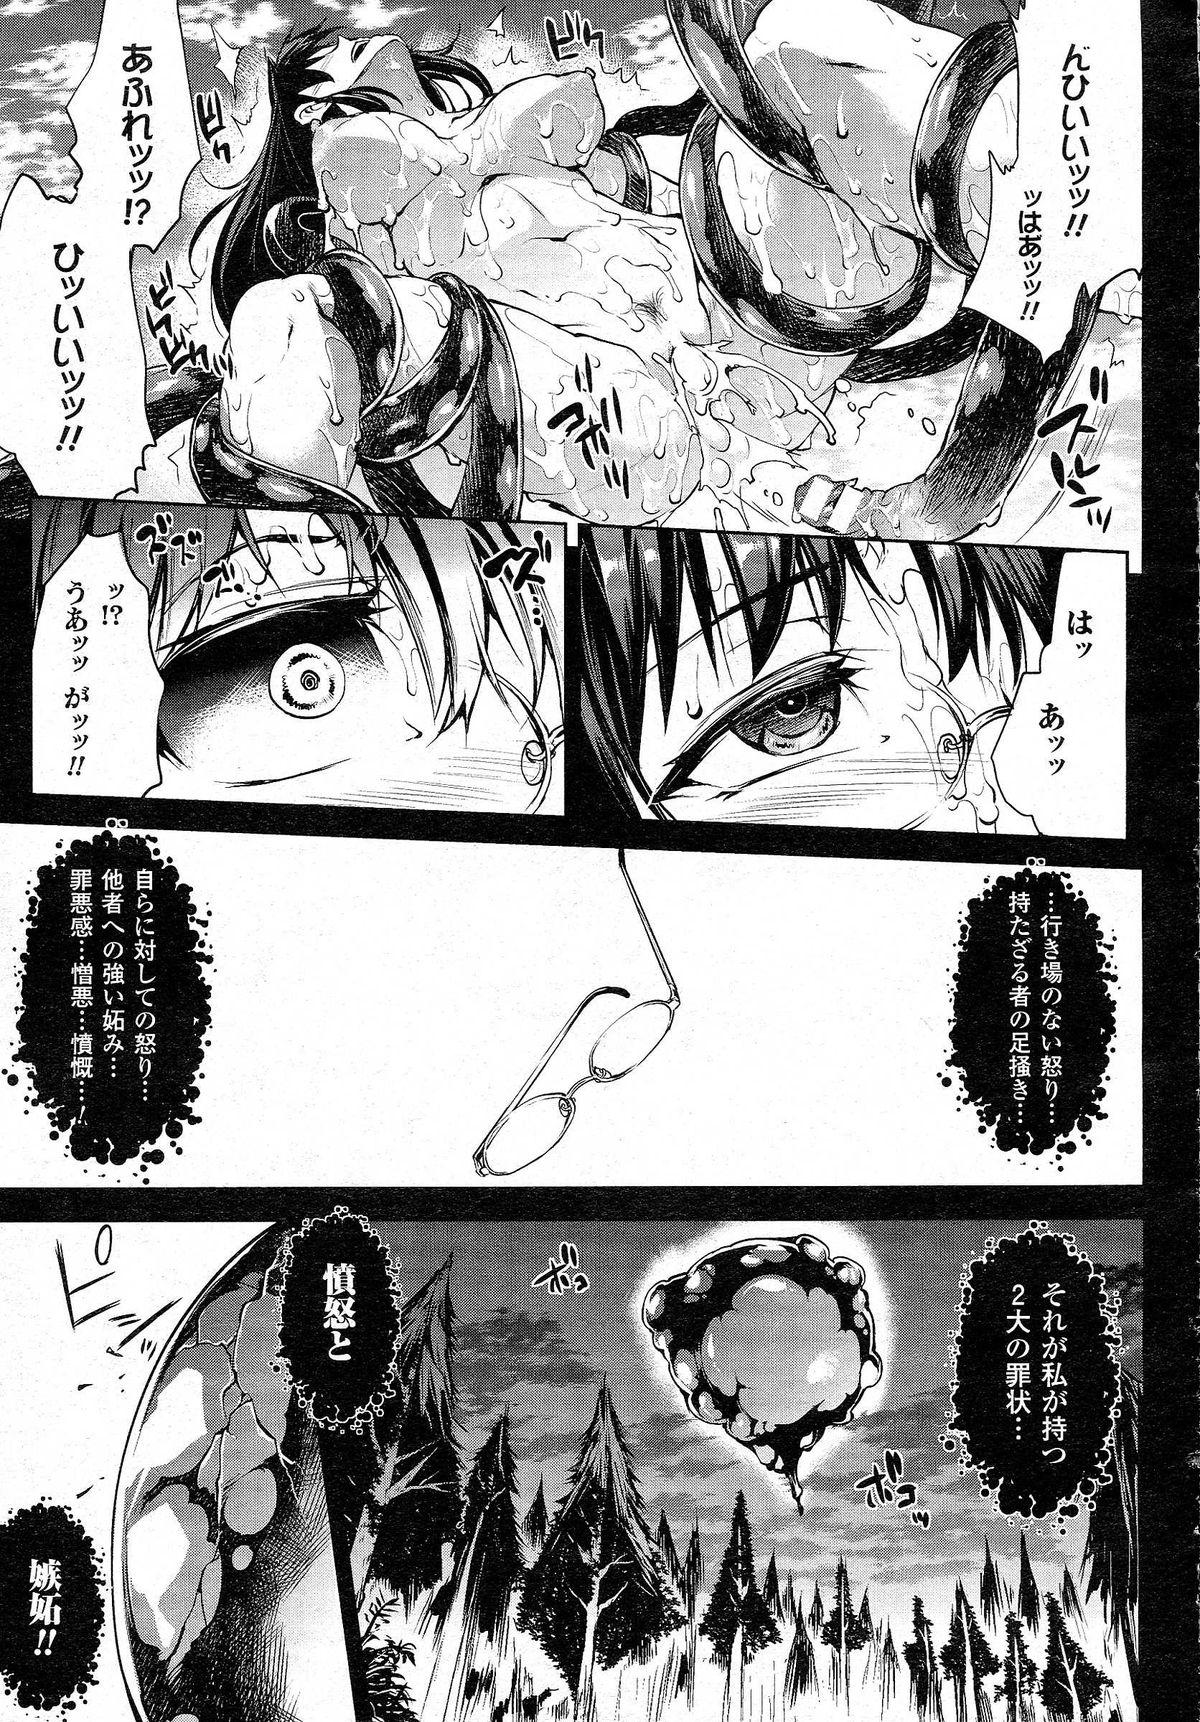 Face [Erect Sawaru] Shinkyoku no Grimoire -PANDRA saga 2nd story- CH 13-20  - Page 11